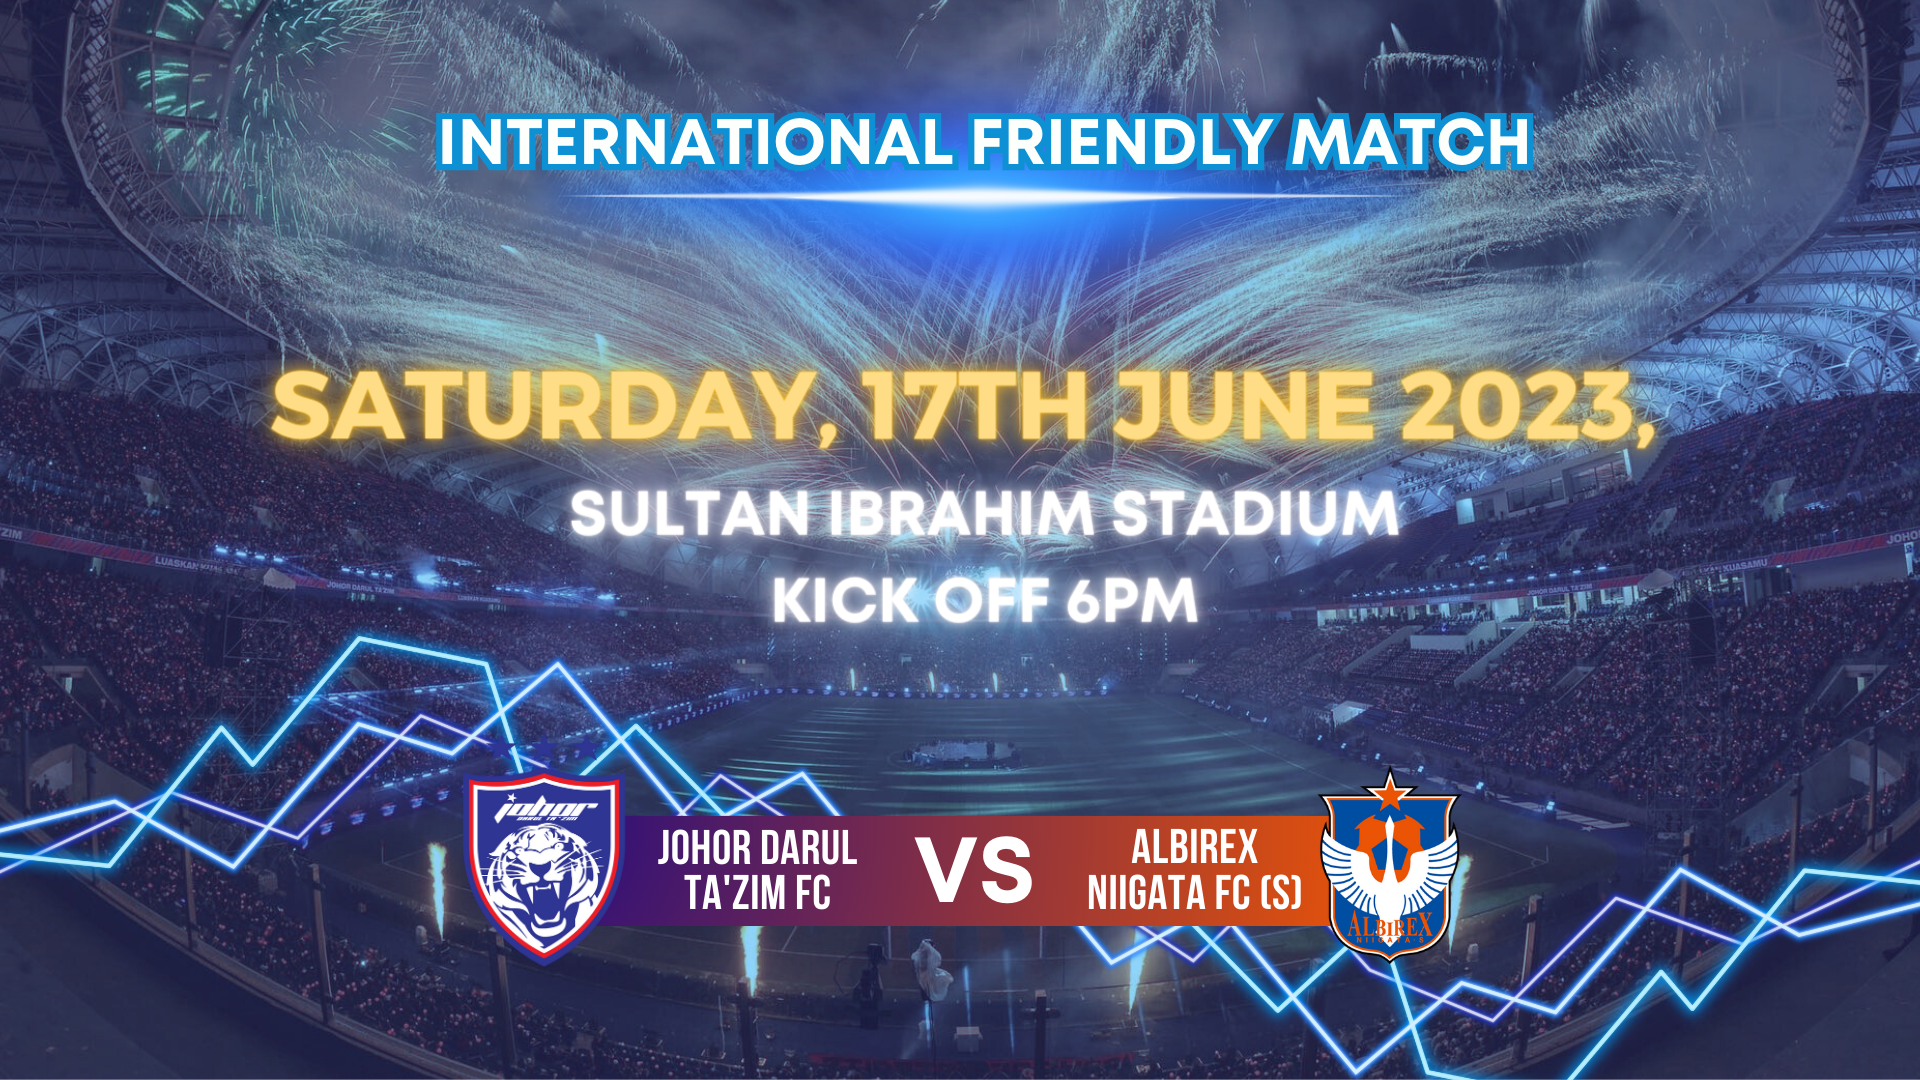 International Friendly match against Johor Darul Tazim F.C